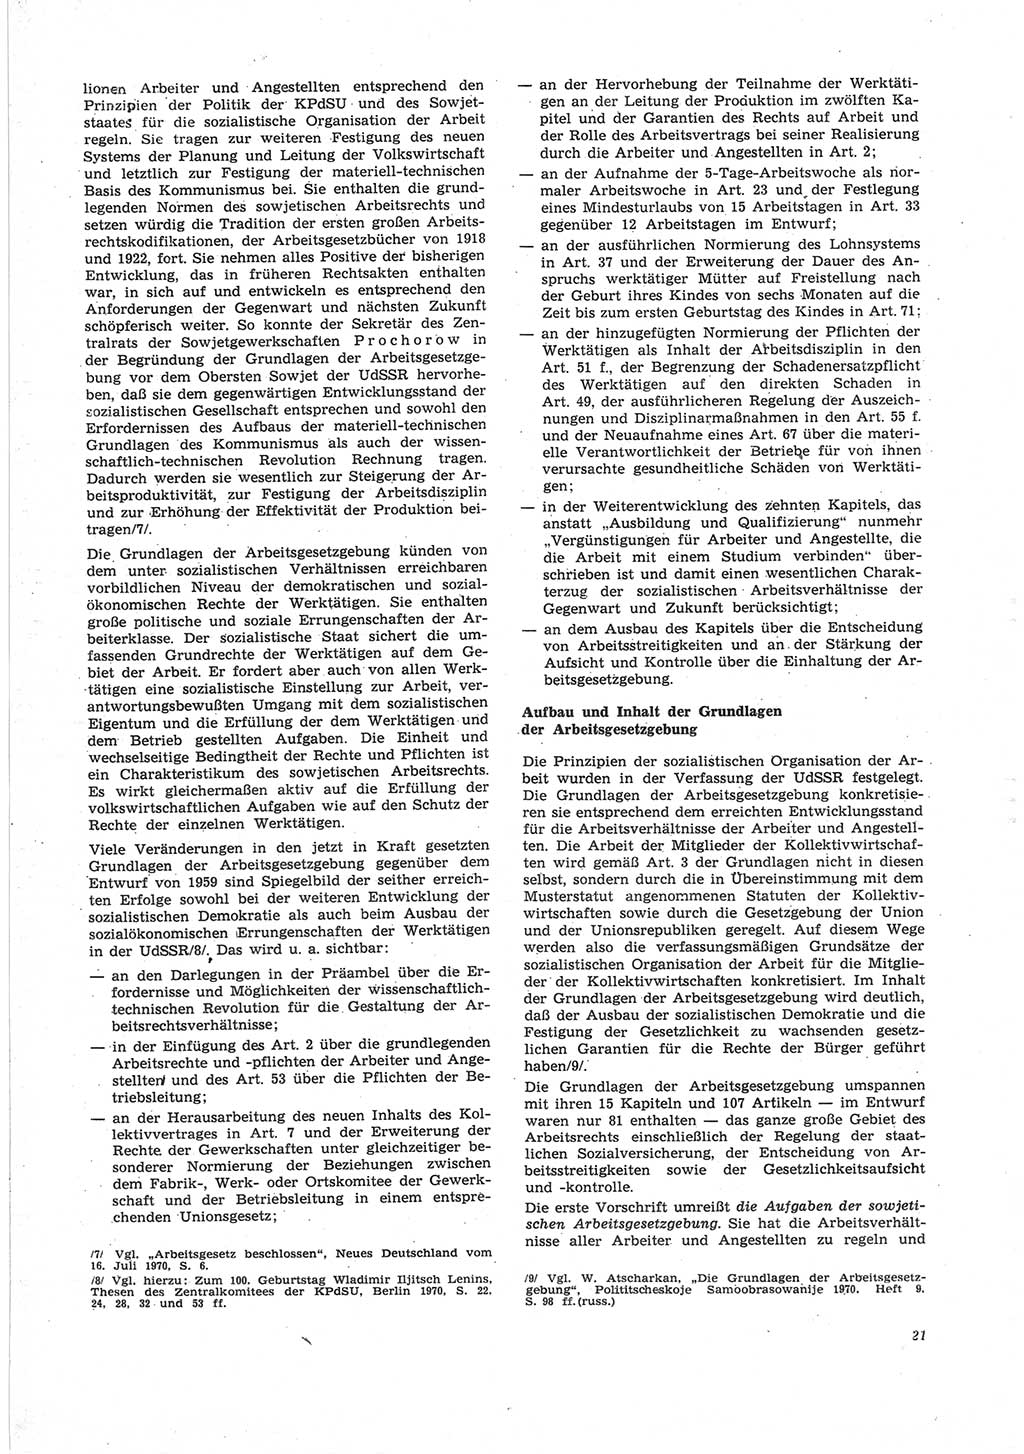 Neue Justiz (NJ), Zeitschrift für Recht und Rechtswissenschaft [Deutsche Demokratische Republik (DDR)], 25. Jahrgang 1971, Seite 21 (NJ DDR 1971, S. 21)